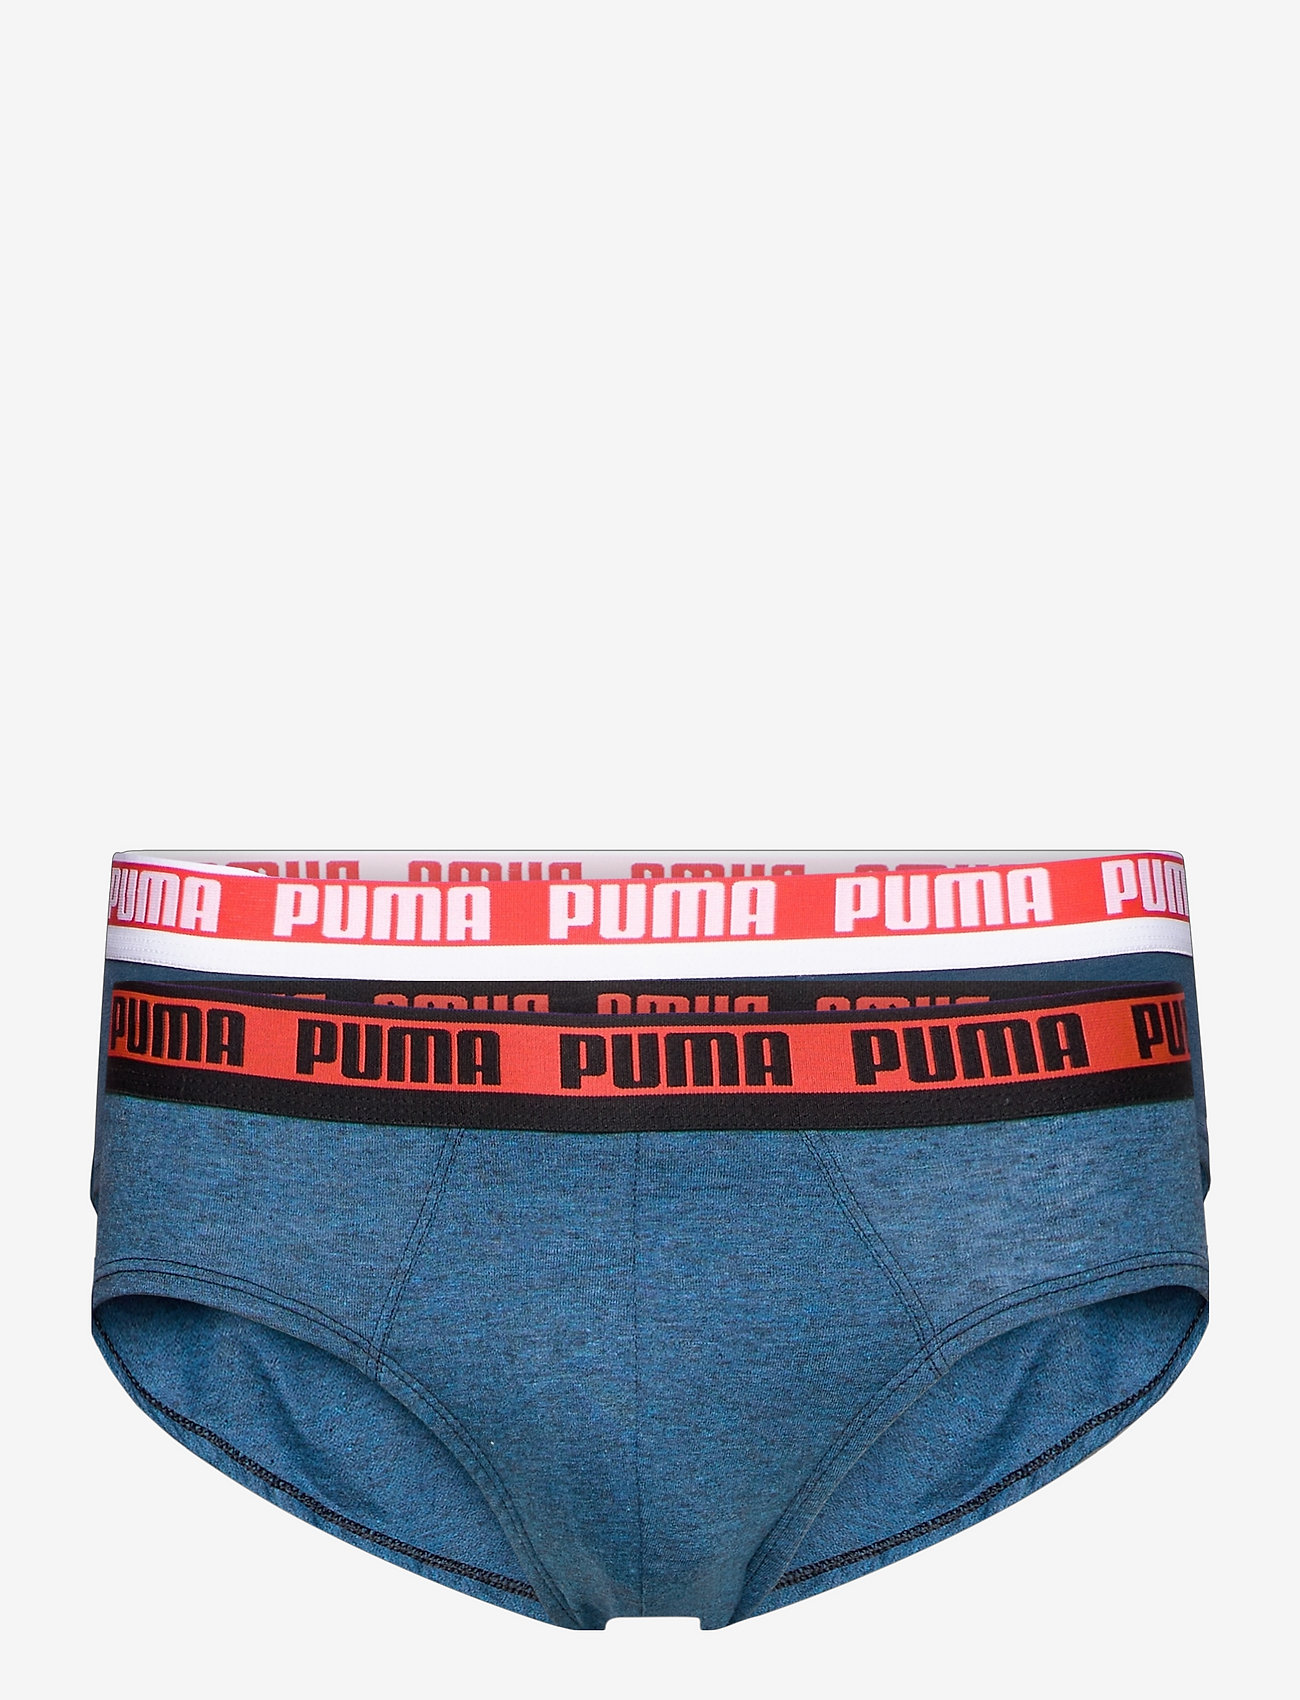 puma men underwear